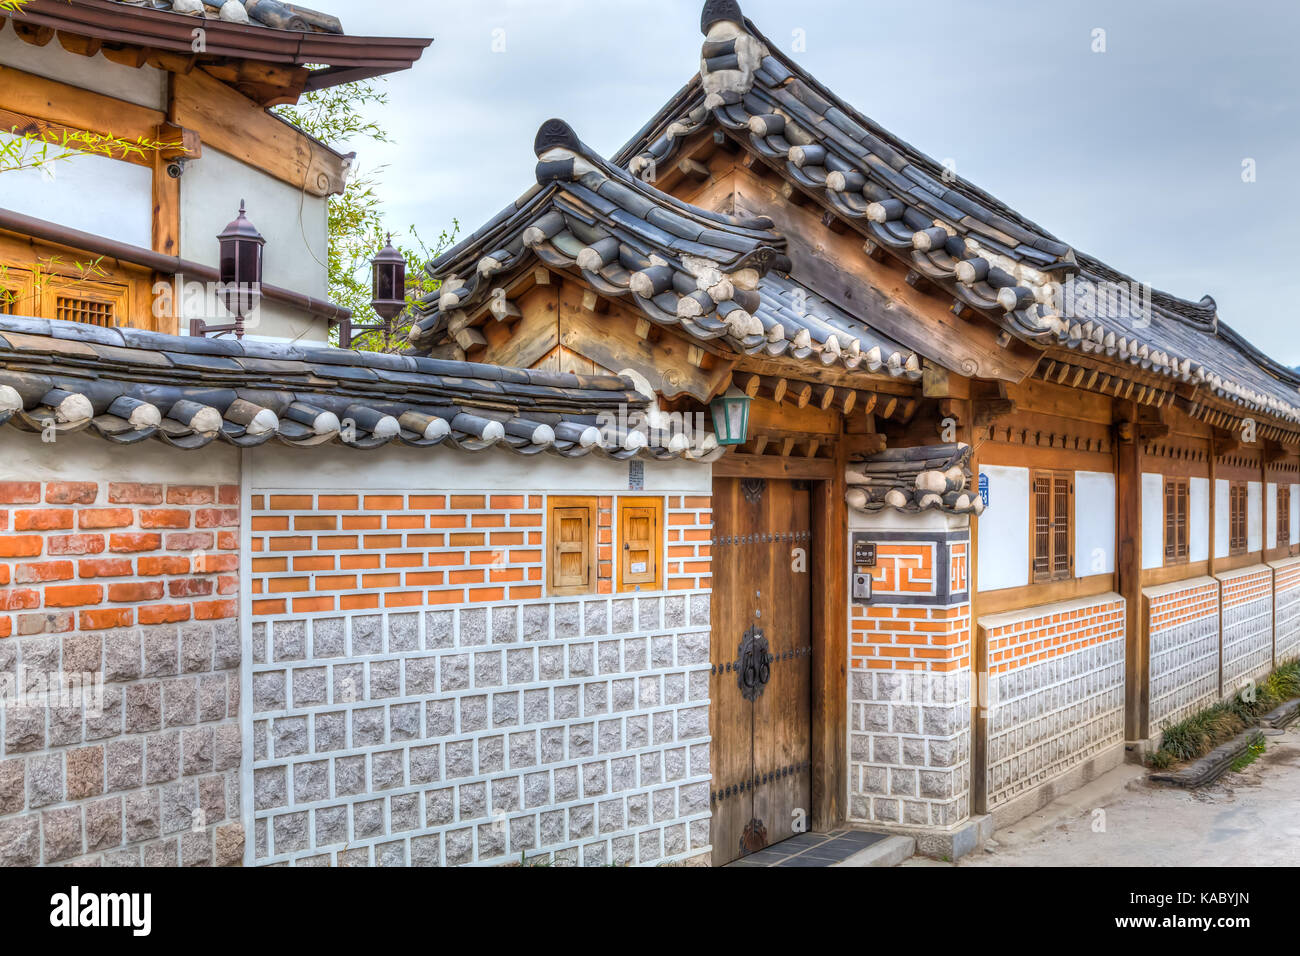 L'architecture unique dans les bâtiments dans le village de Bukchon Hanok, Séoul, Corée du Sud, en Asie. Banque D'Images